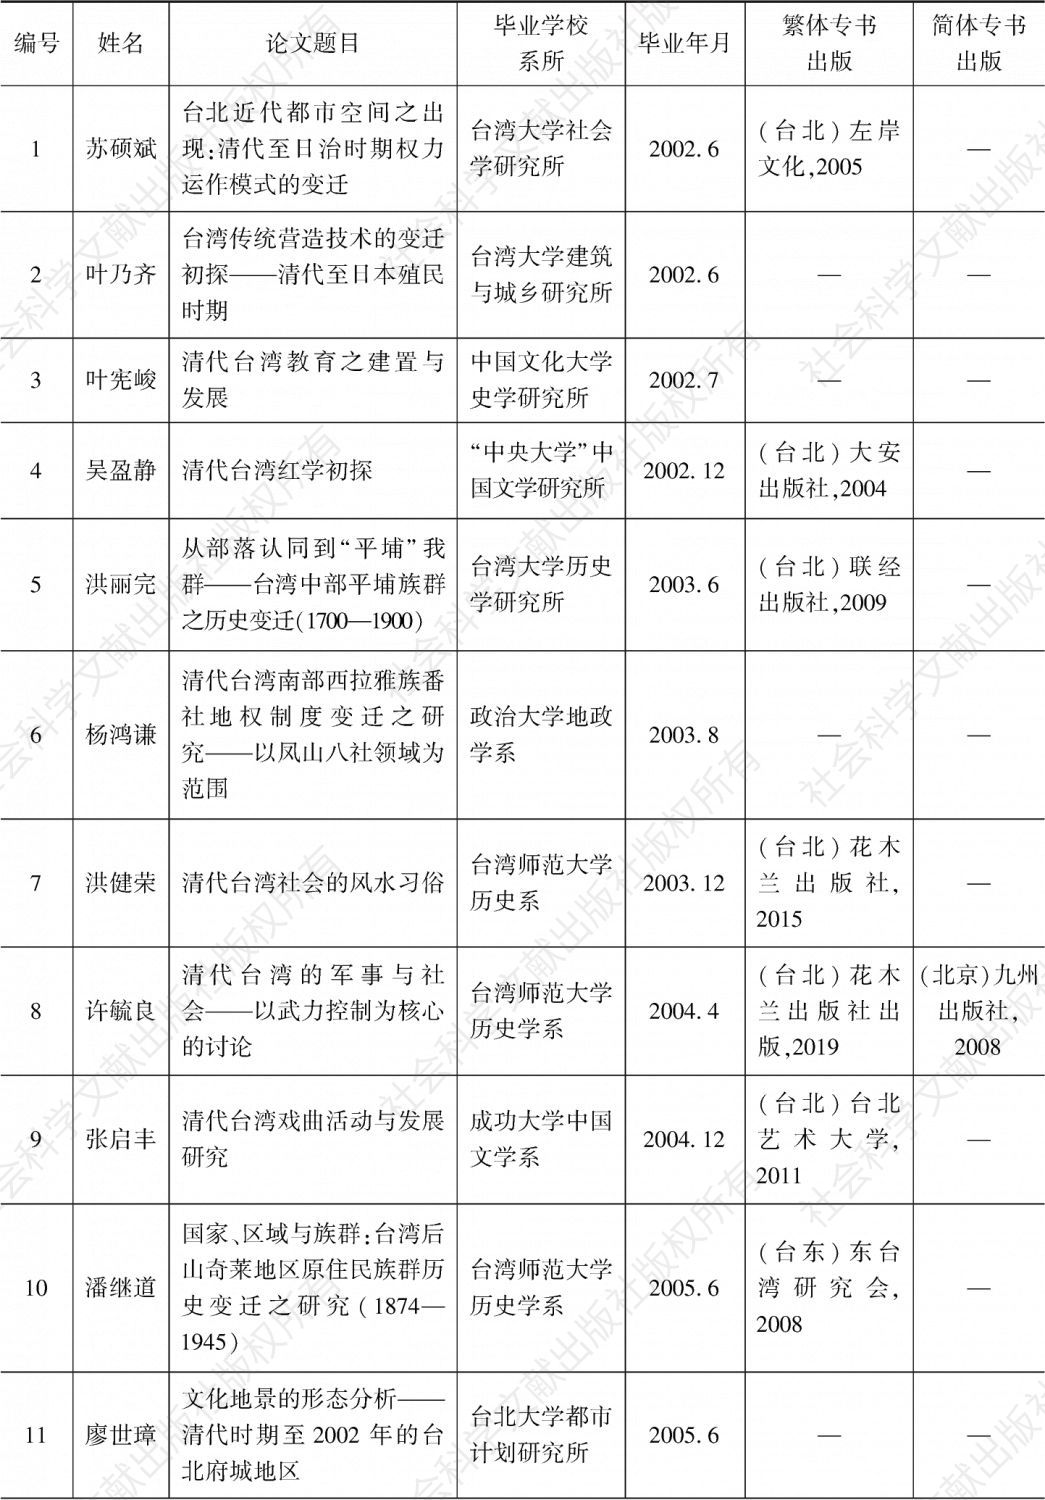 附表 2000—2017年台湾各公私立大学对于清代台湾历史、文学与文化研究博士学位论文一览